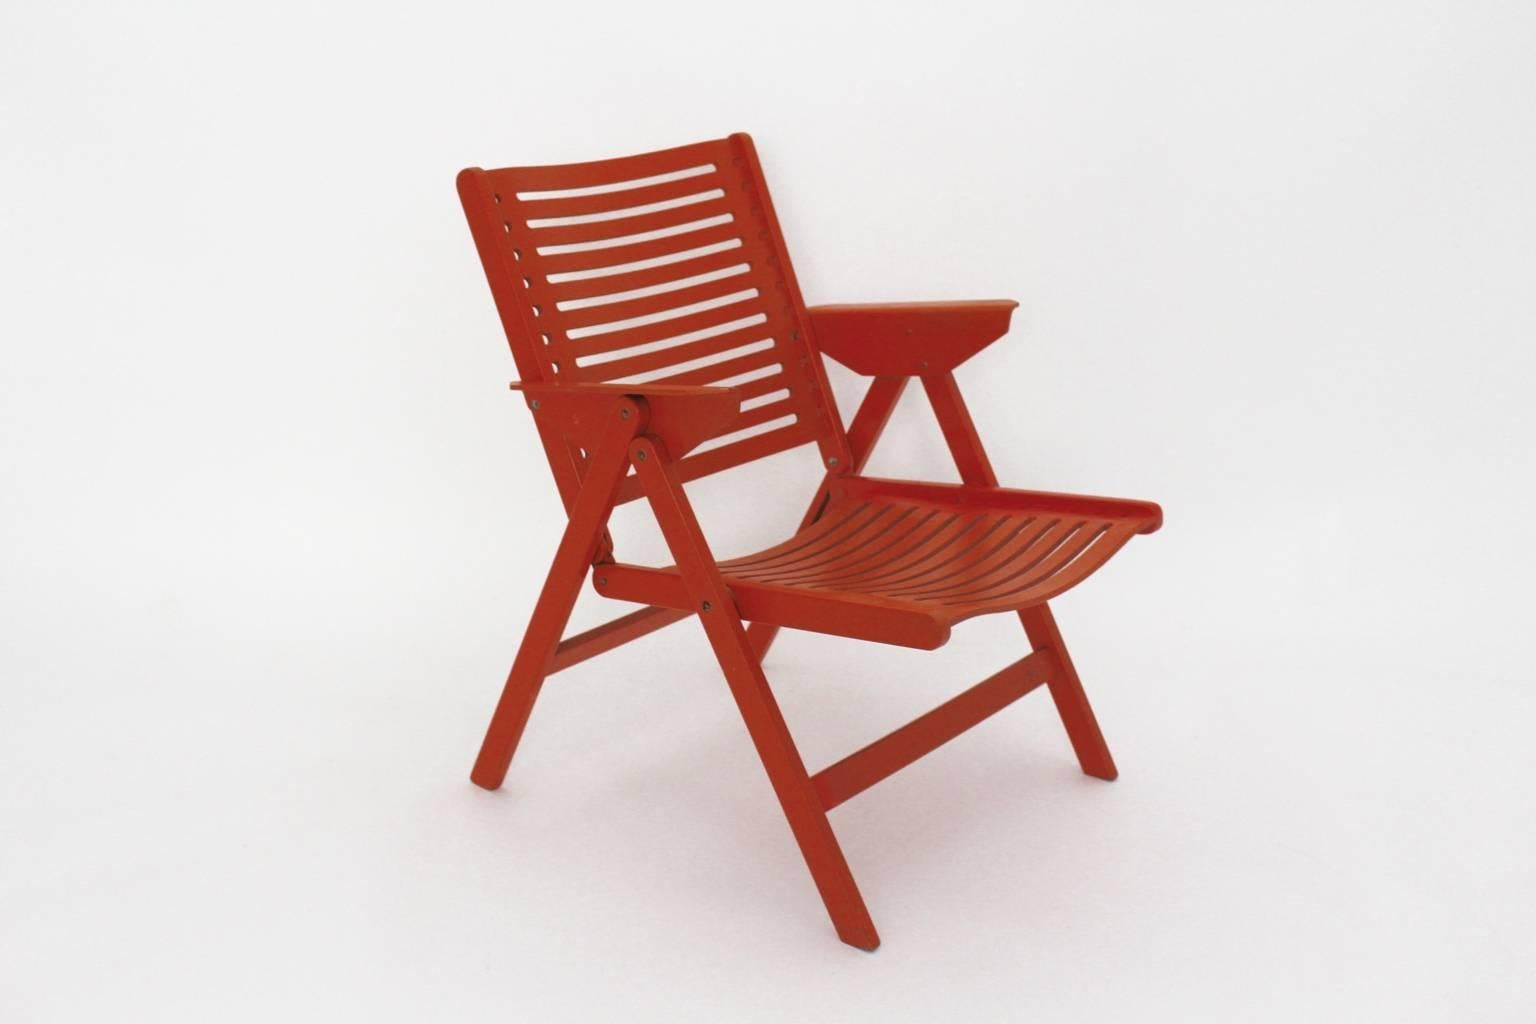 Fauteuil pliable vintage de style moderne du milieu du siècle dernier en contreplaqué laqué orange et en bois de hêtre. Le fauteuil est en très bon état d'origine  exécuté dans les années 1950.
Toutes les mesures sont approximatives.
